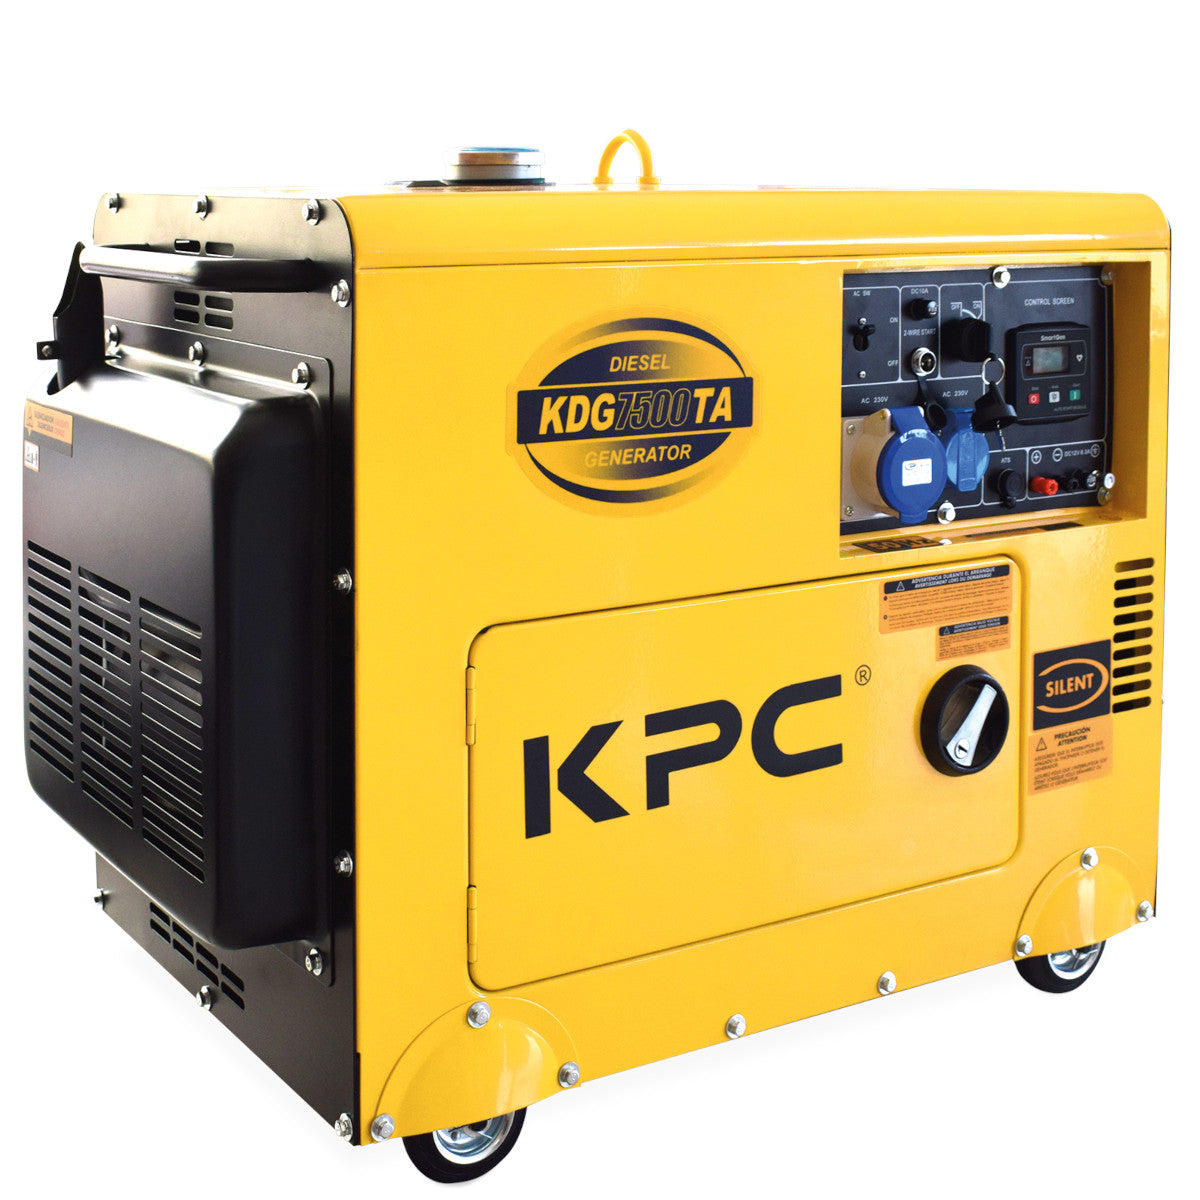 Groupe électrogène insonorisé diesel avec AVR KPC KDG 7500 TA